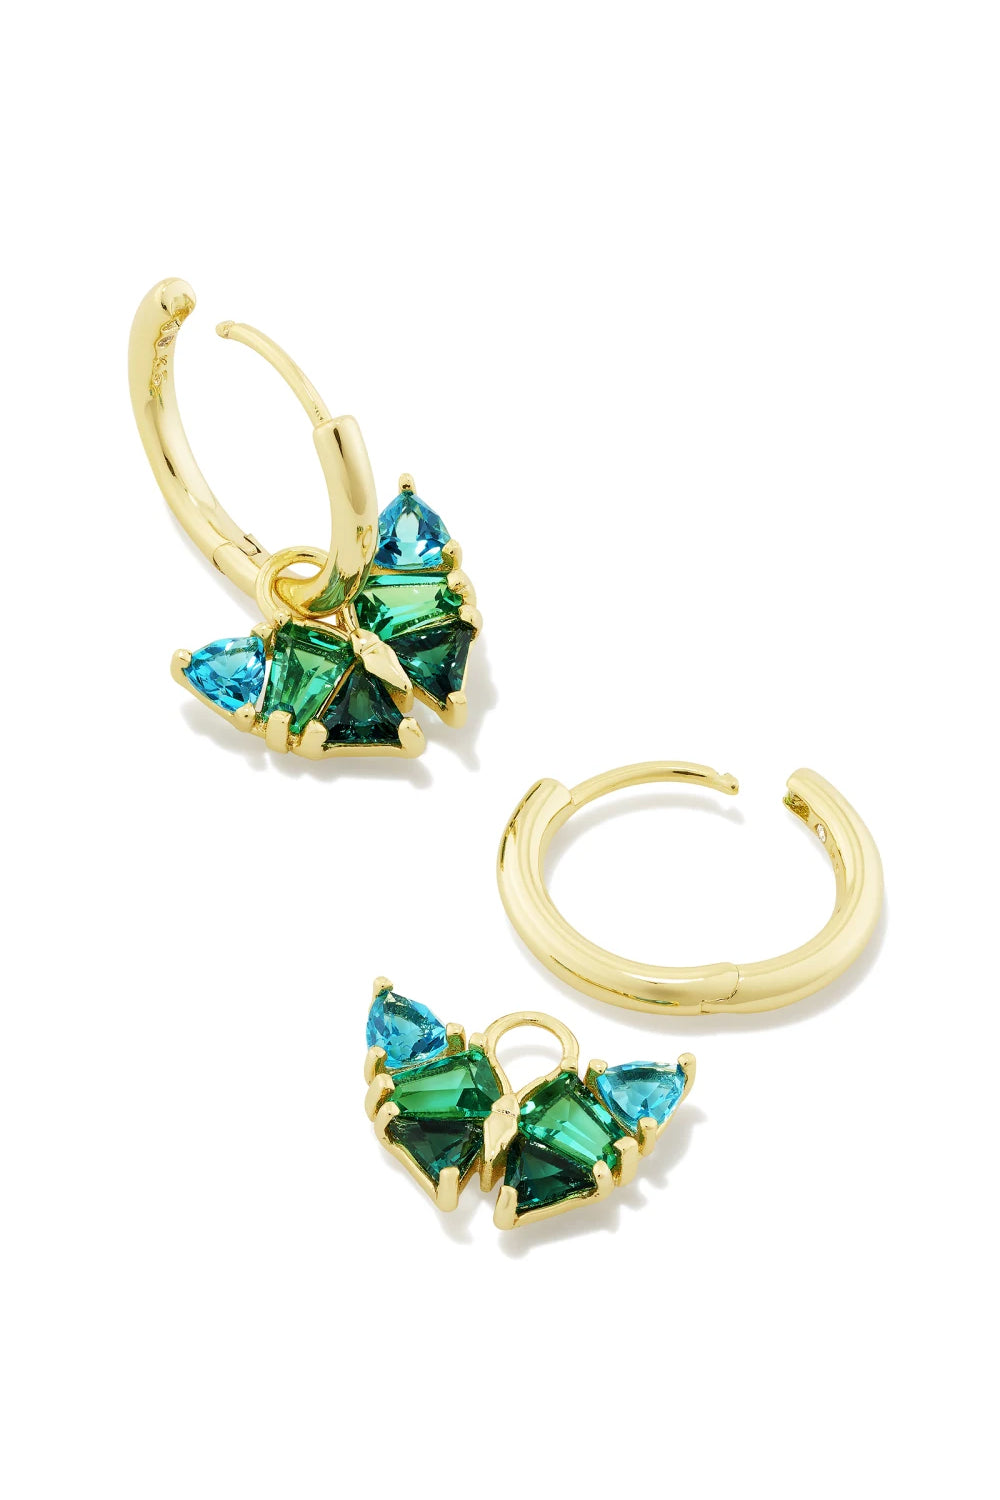 Kendra Scott: Blair Gold Butterfly Huggie Earrings - Green Mix | Makk Fashions